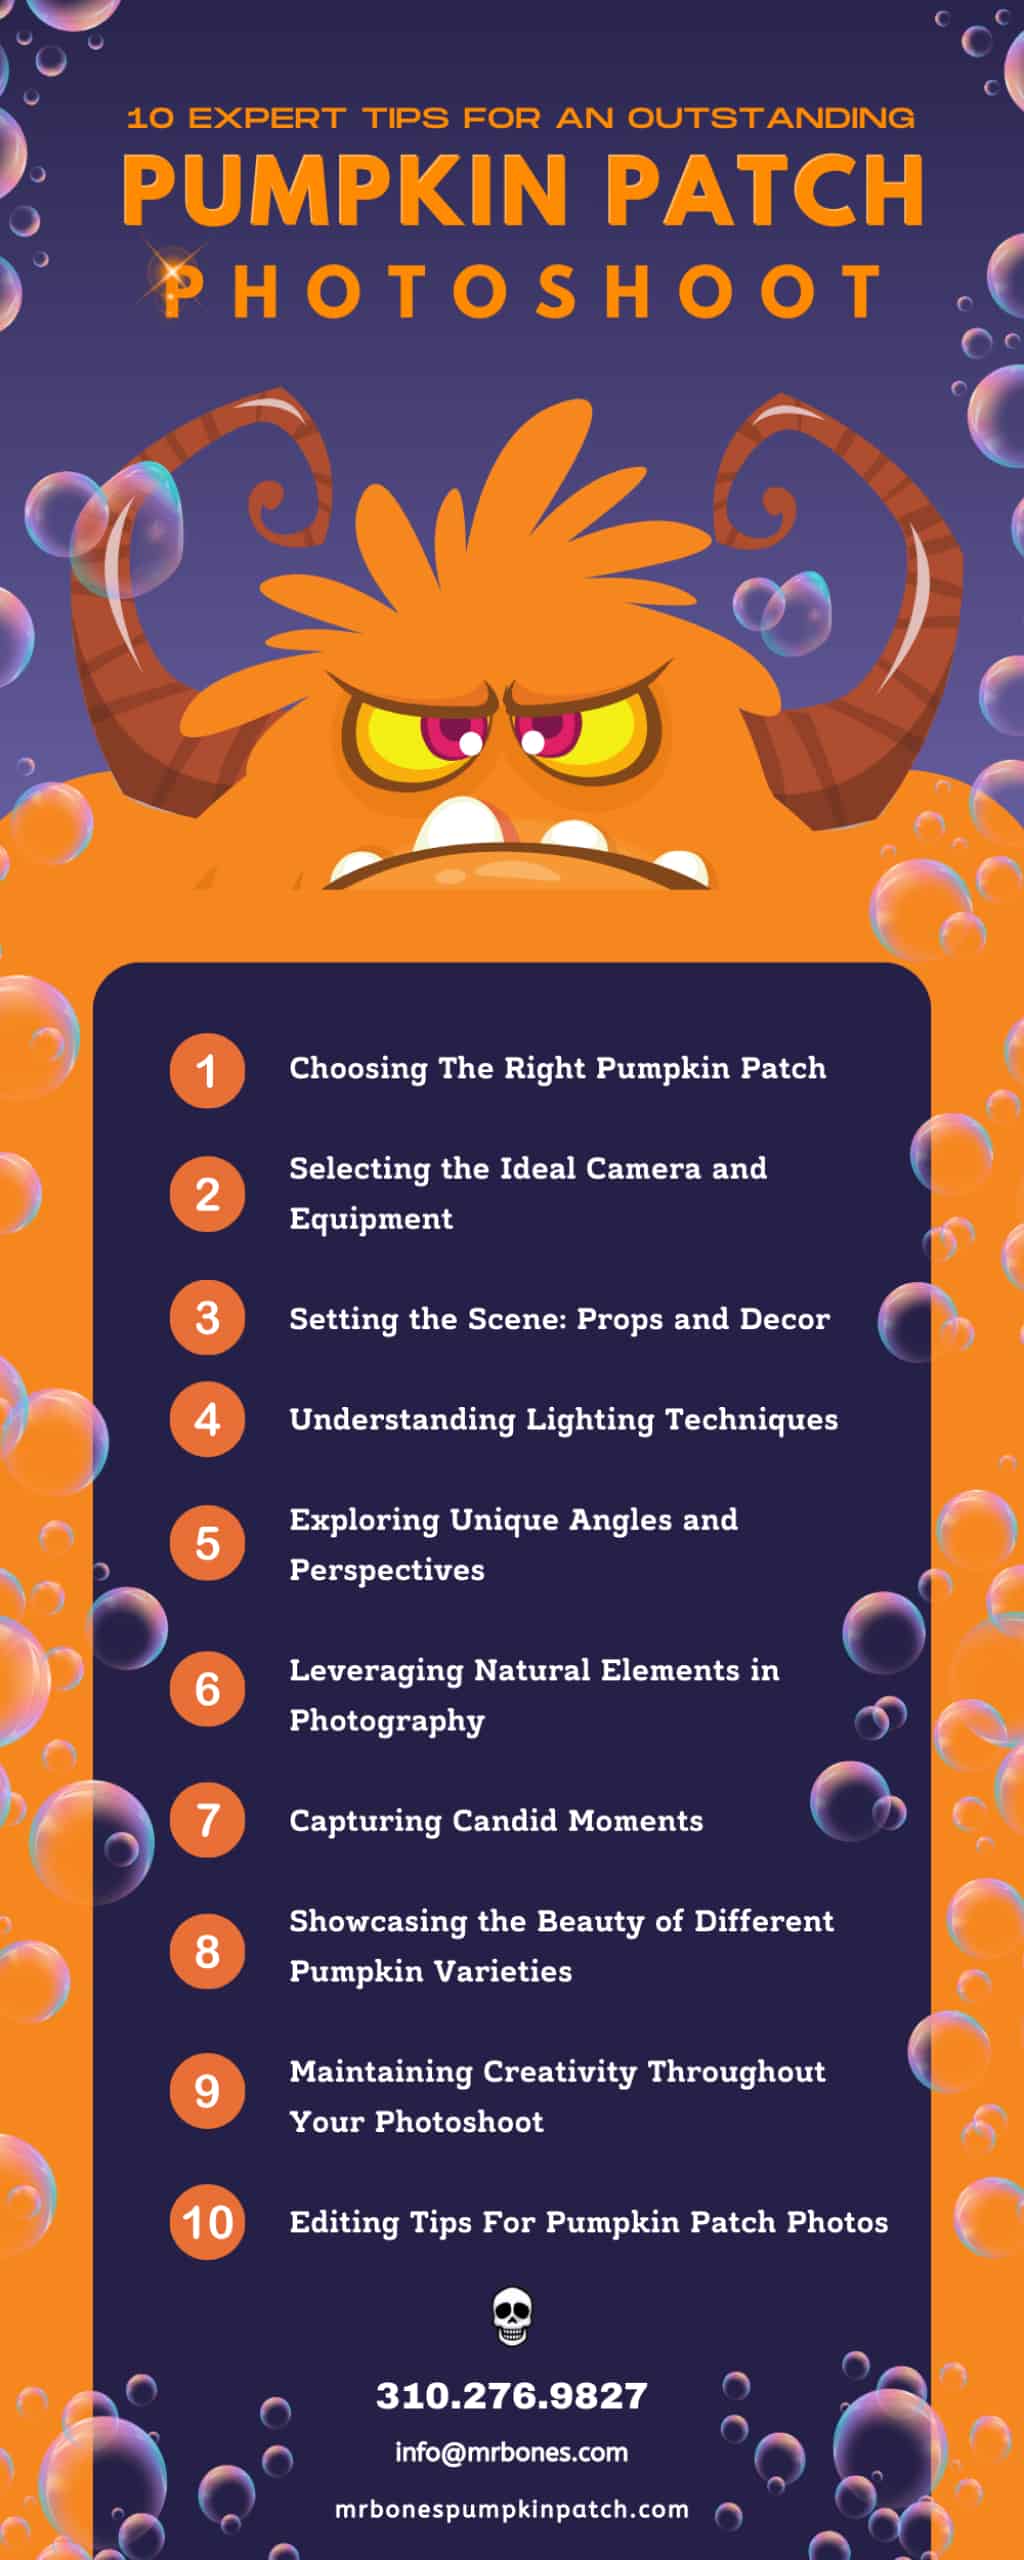 10 Expert Tips for an Outstanding Pumpkin Patch Photoshoot